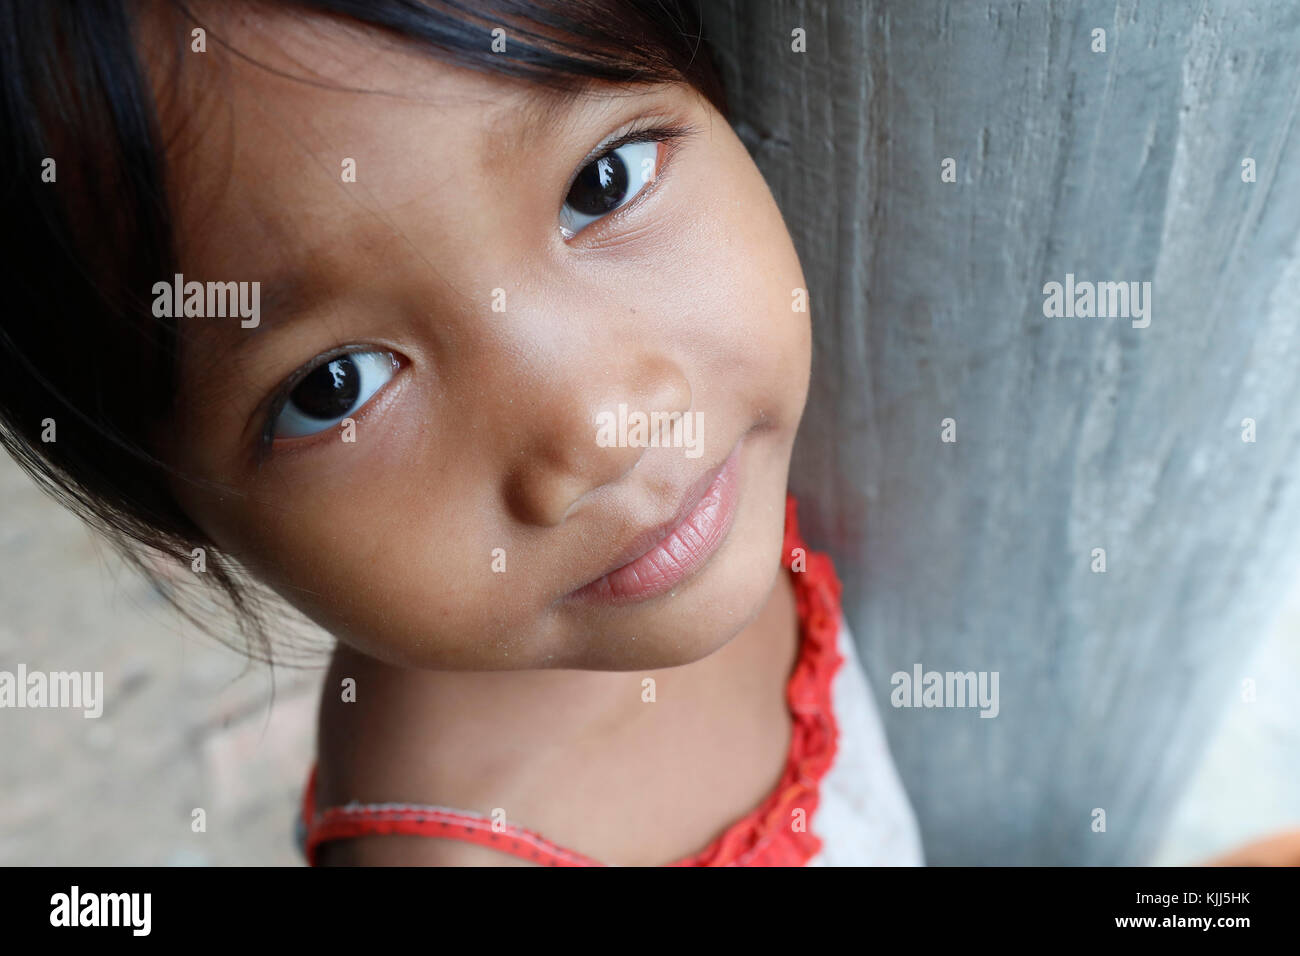 Bahnar (Ba Na) ethnische Gruppe. Junges Mädchen. Porträt. Kon Tum. Vietnam. Stockfoto